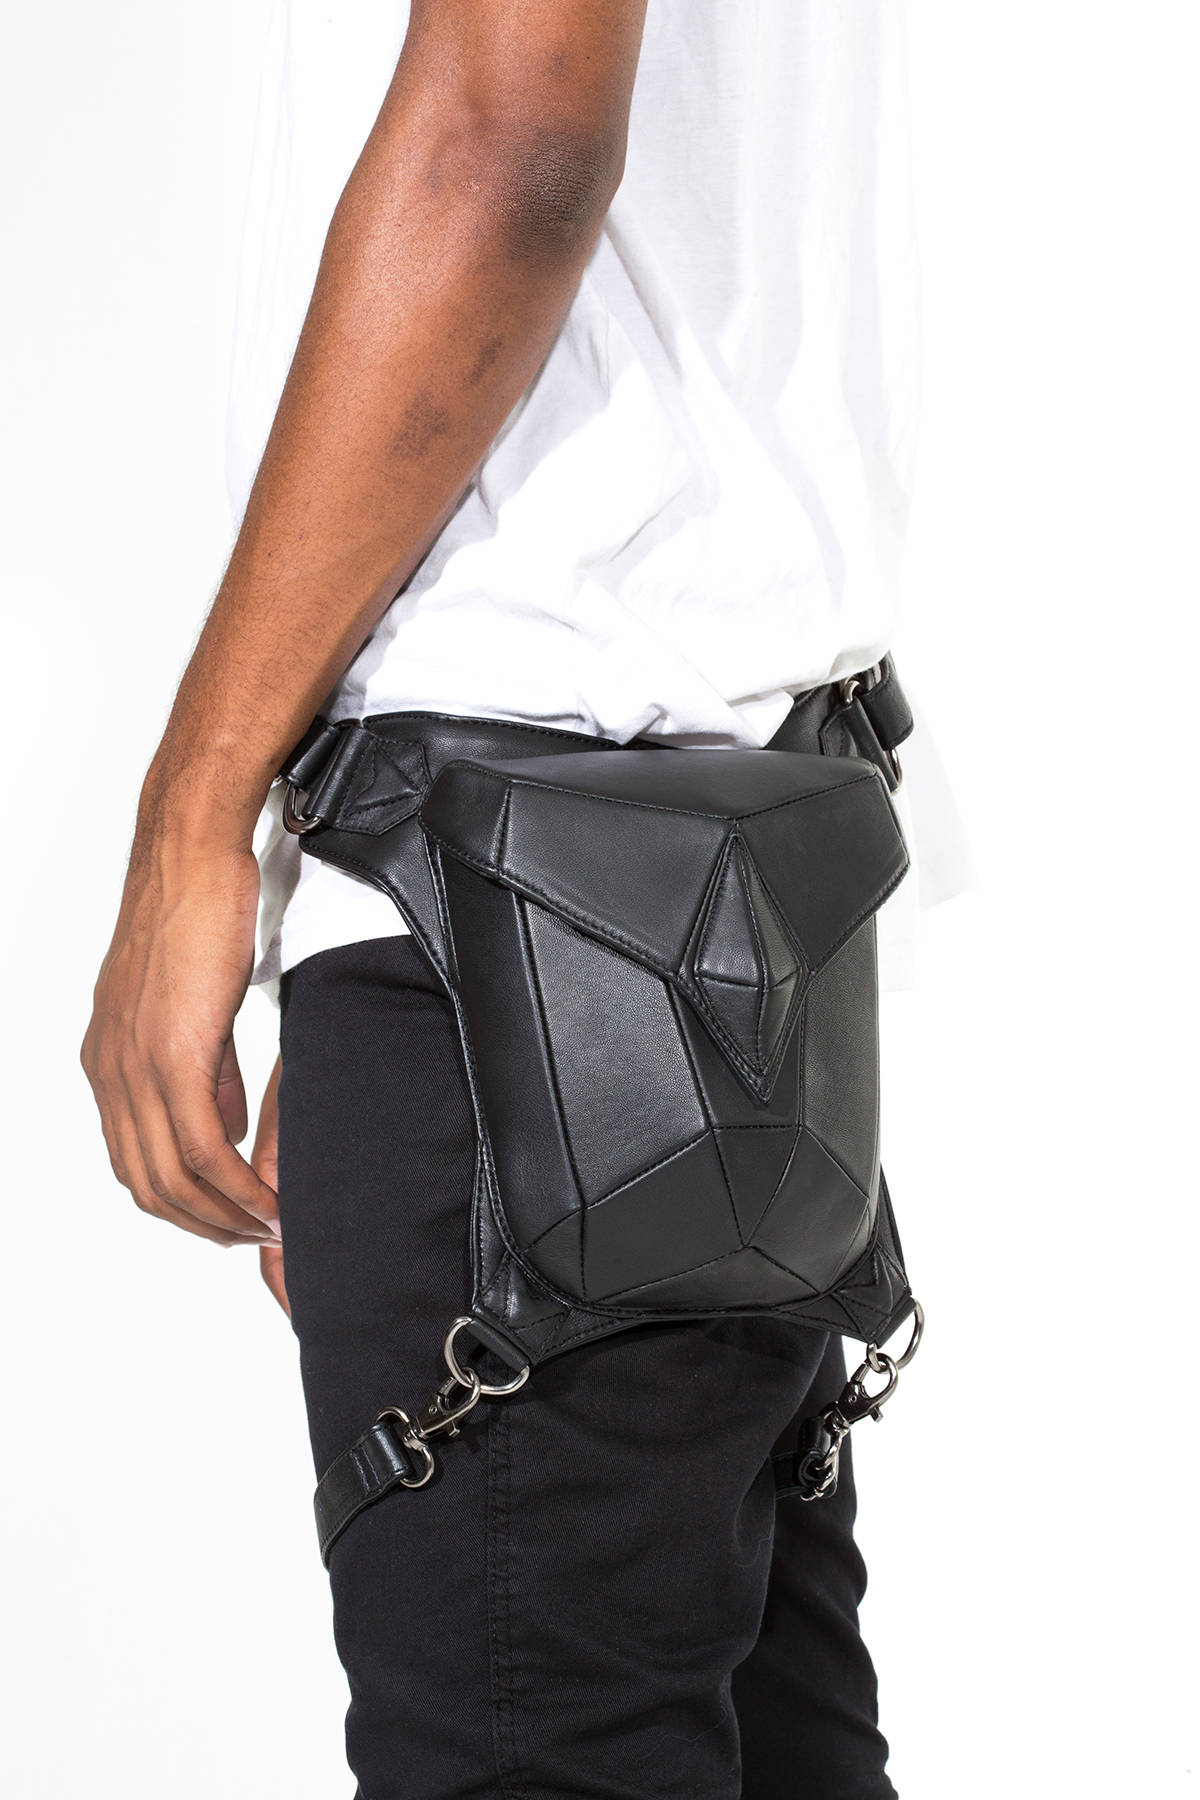 METRIC RAVEN Black Leather Holster Shoulder Backpack and Hip Bag